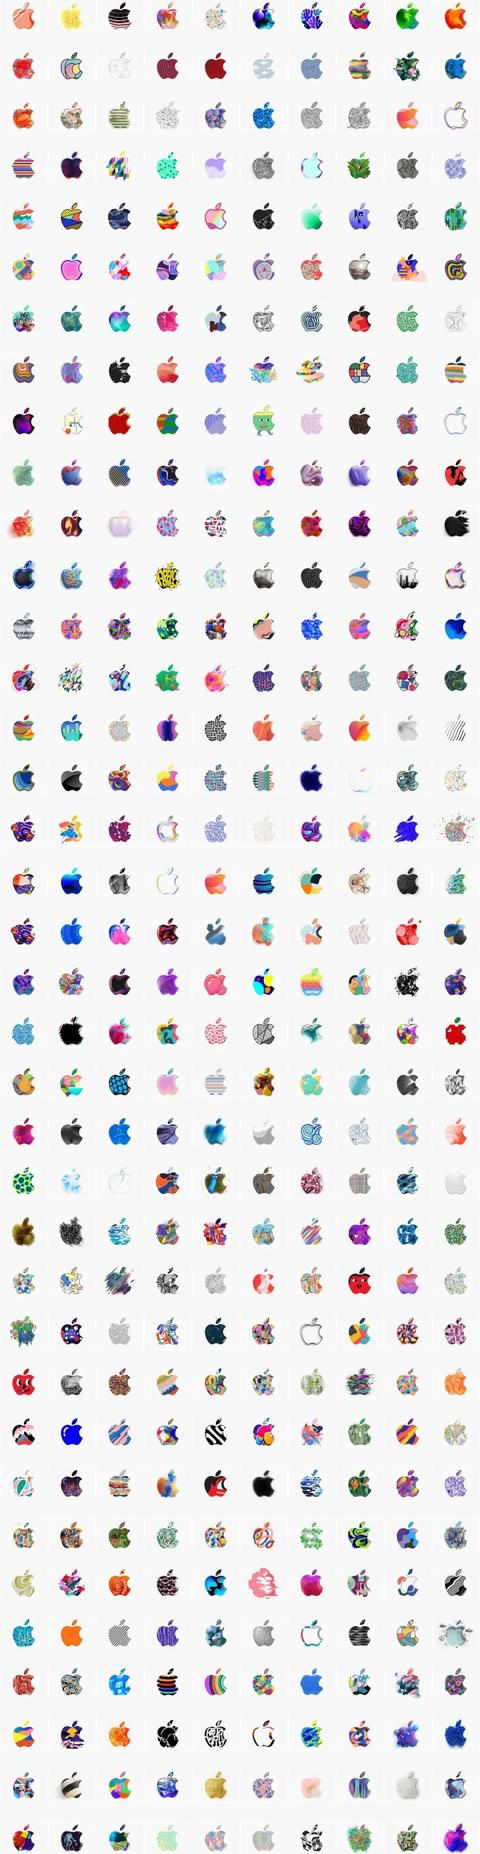 苹果手机的标志苹果手机顶部图标详解-第24张图片-太平洋在线